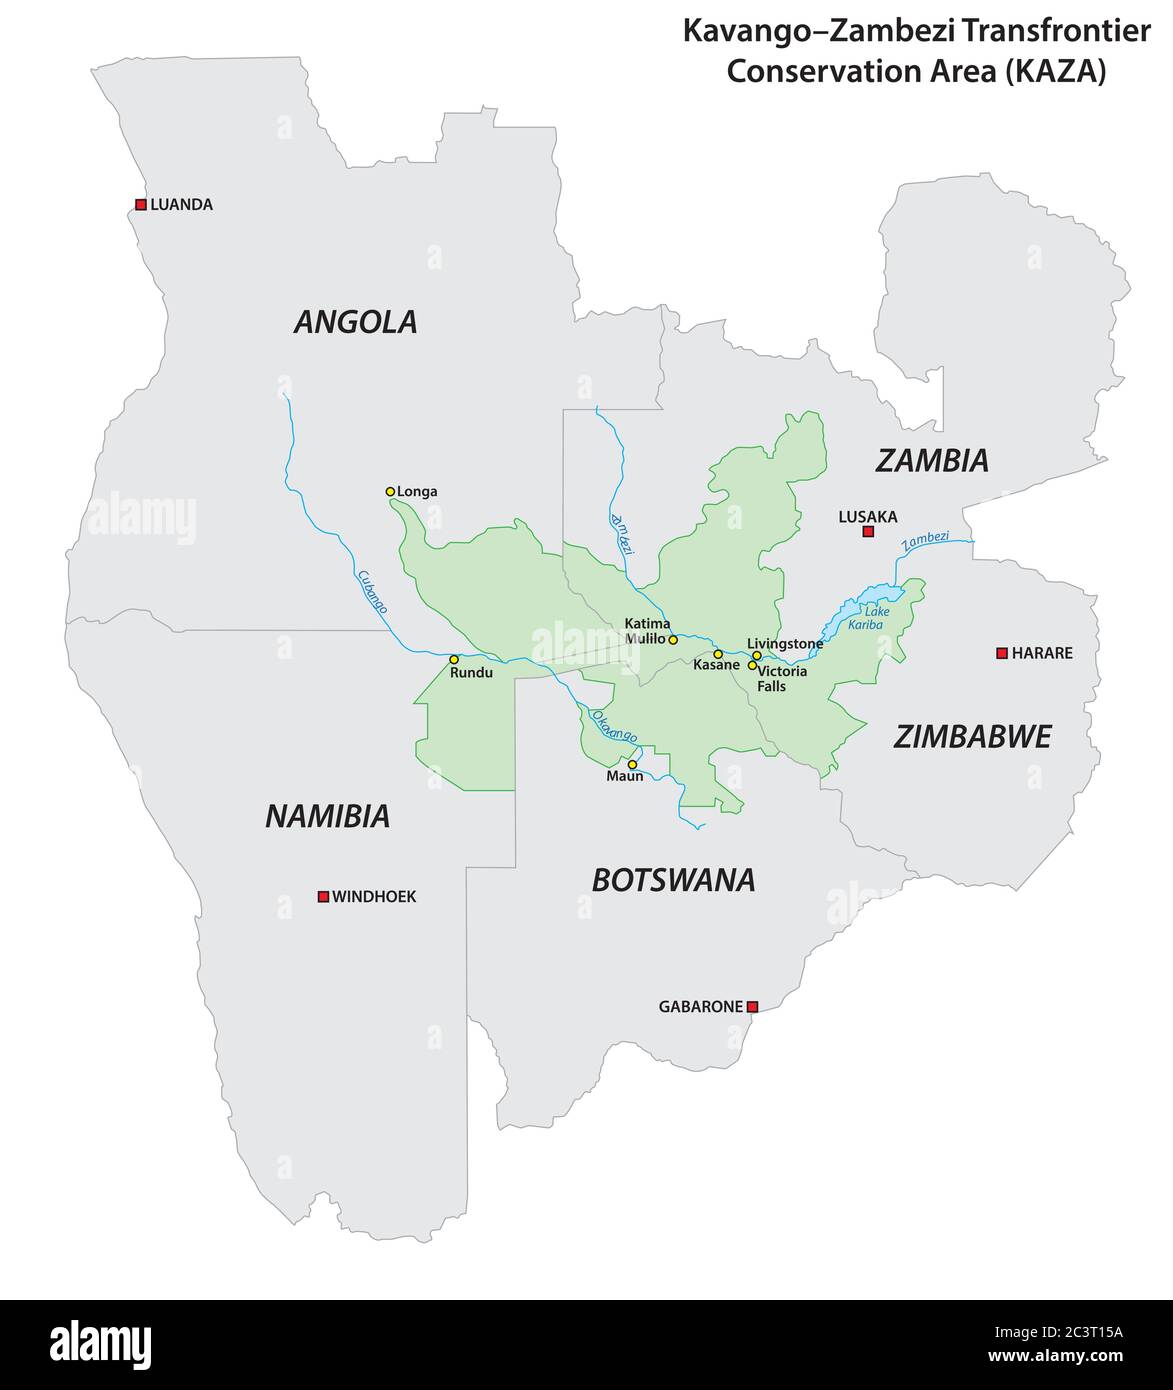 Mapa vectorial de la Zona de Conservación transfronteriza Kavango-Zambezi (KAZA) en el sur de África Ilustración del Vector